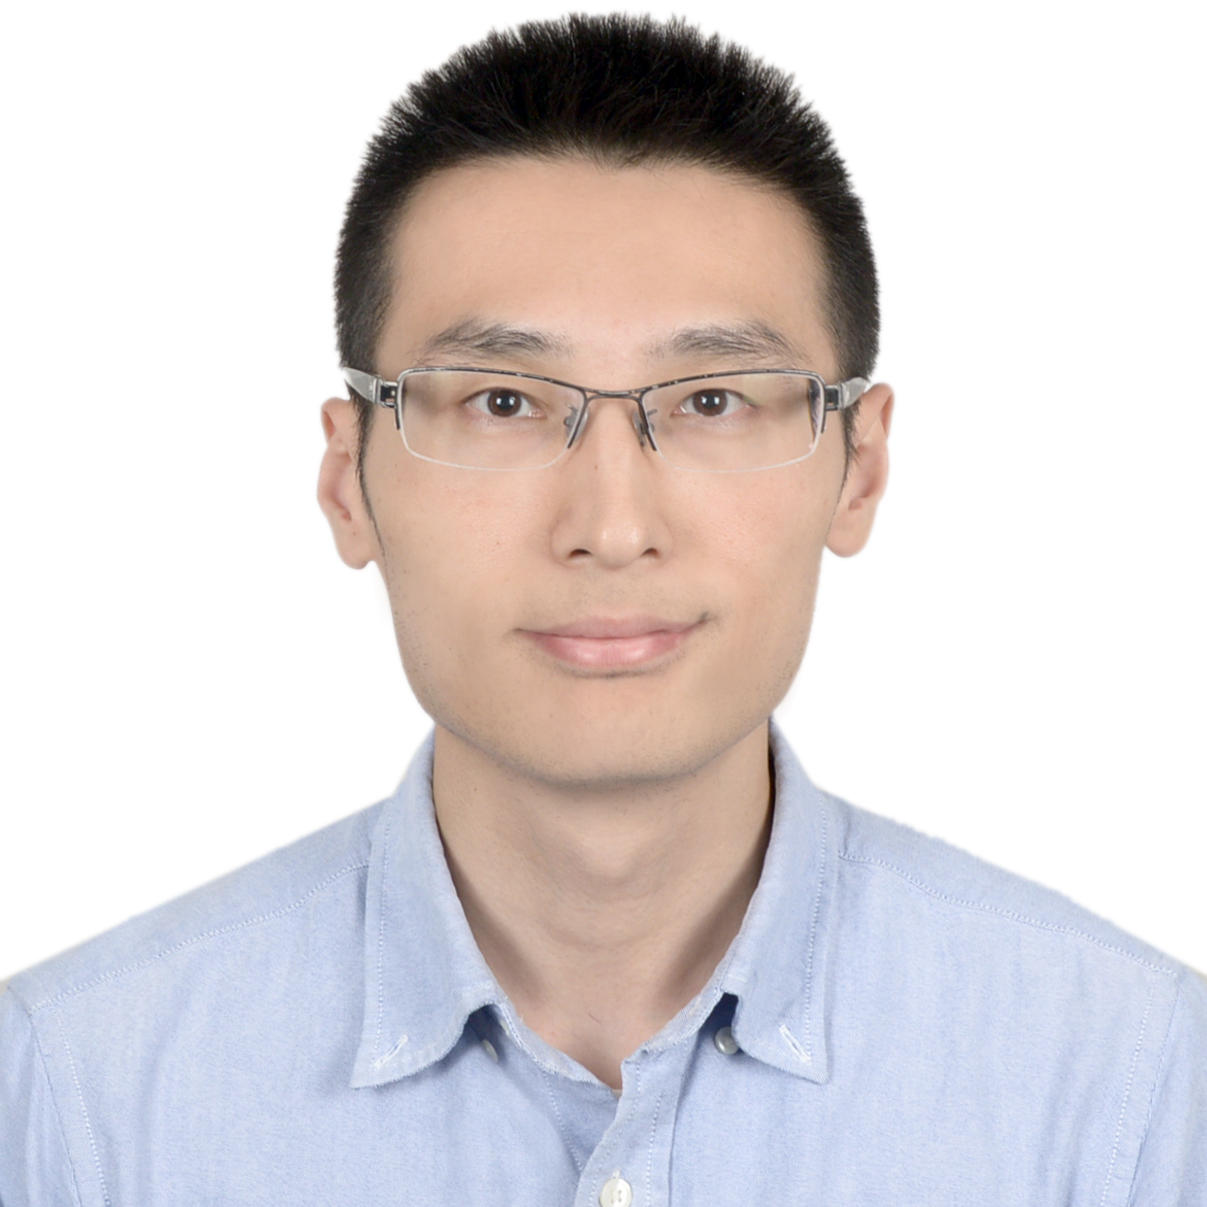 网易网易杭州研究院云计算技术部资深架构师张亮 照片